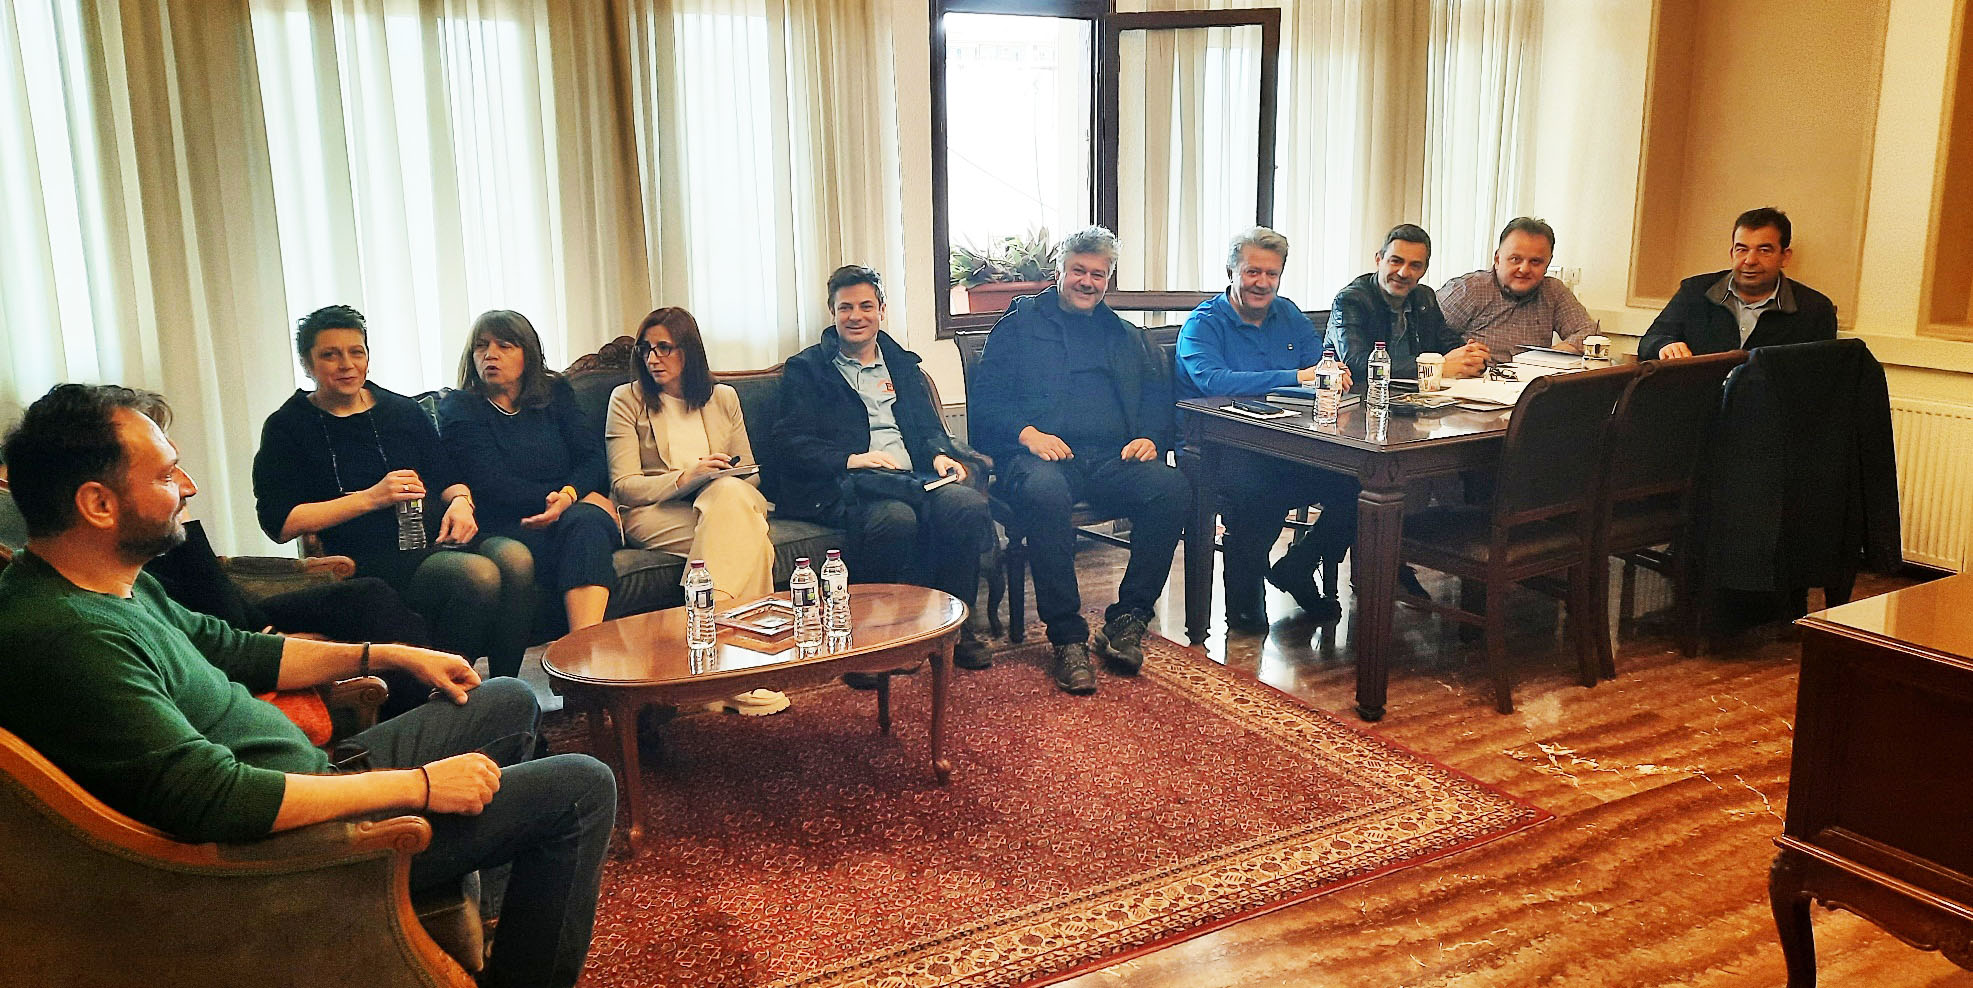 Σύσκεψη στο Δήμο Εορδαίας με θέμα την ετοιμότητα και την προετοιμασία των υπηρεσιών ενόψει των Εθνικών Εκλογών